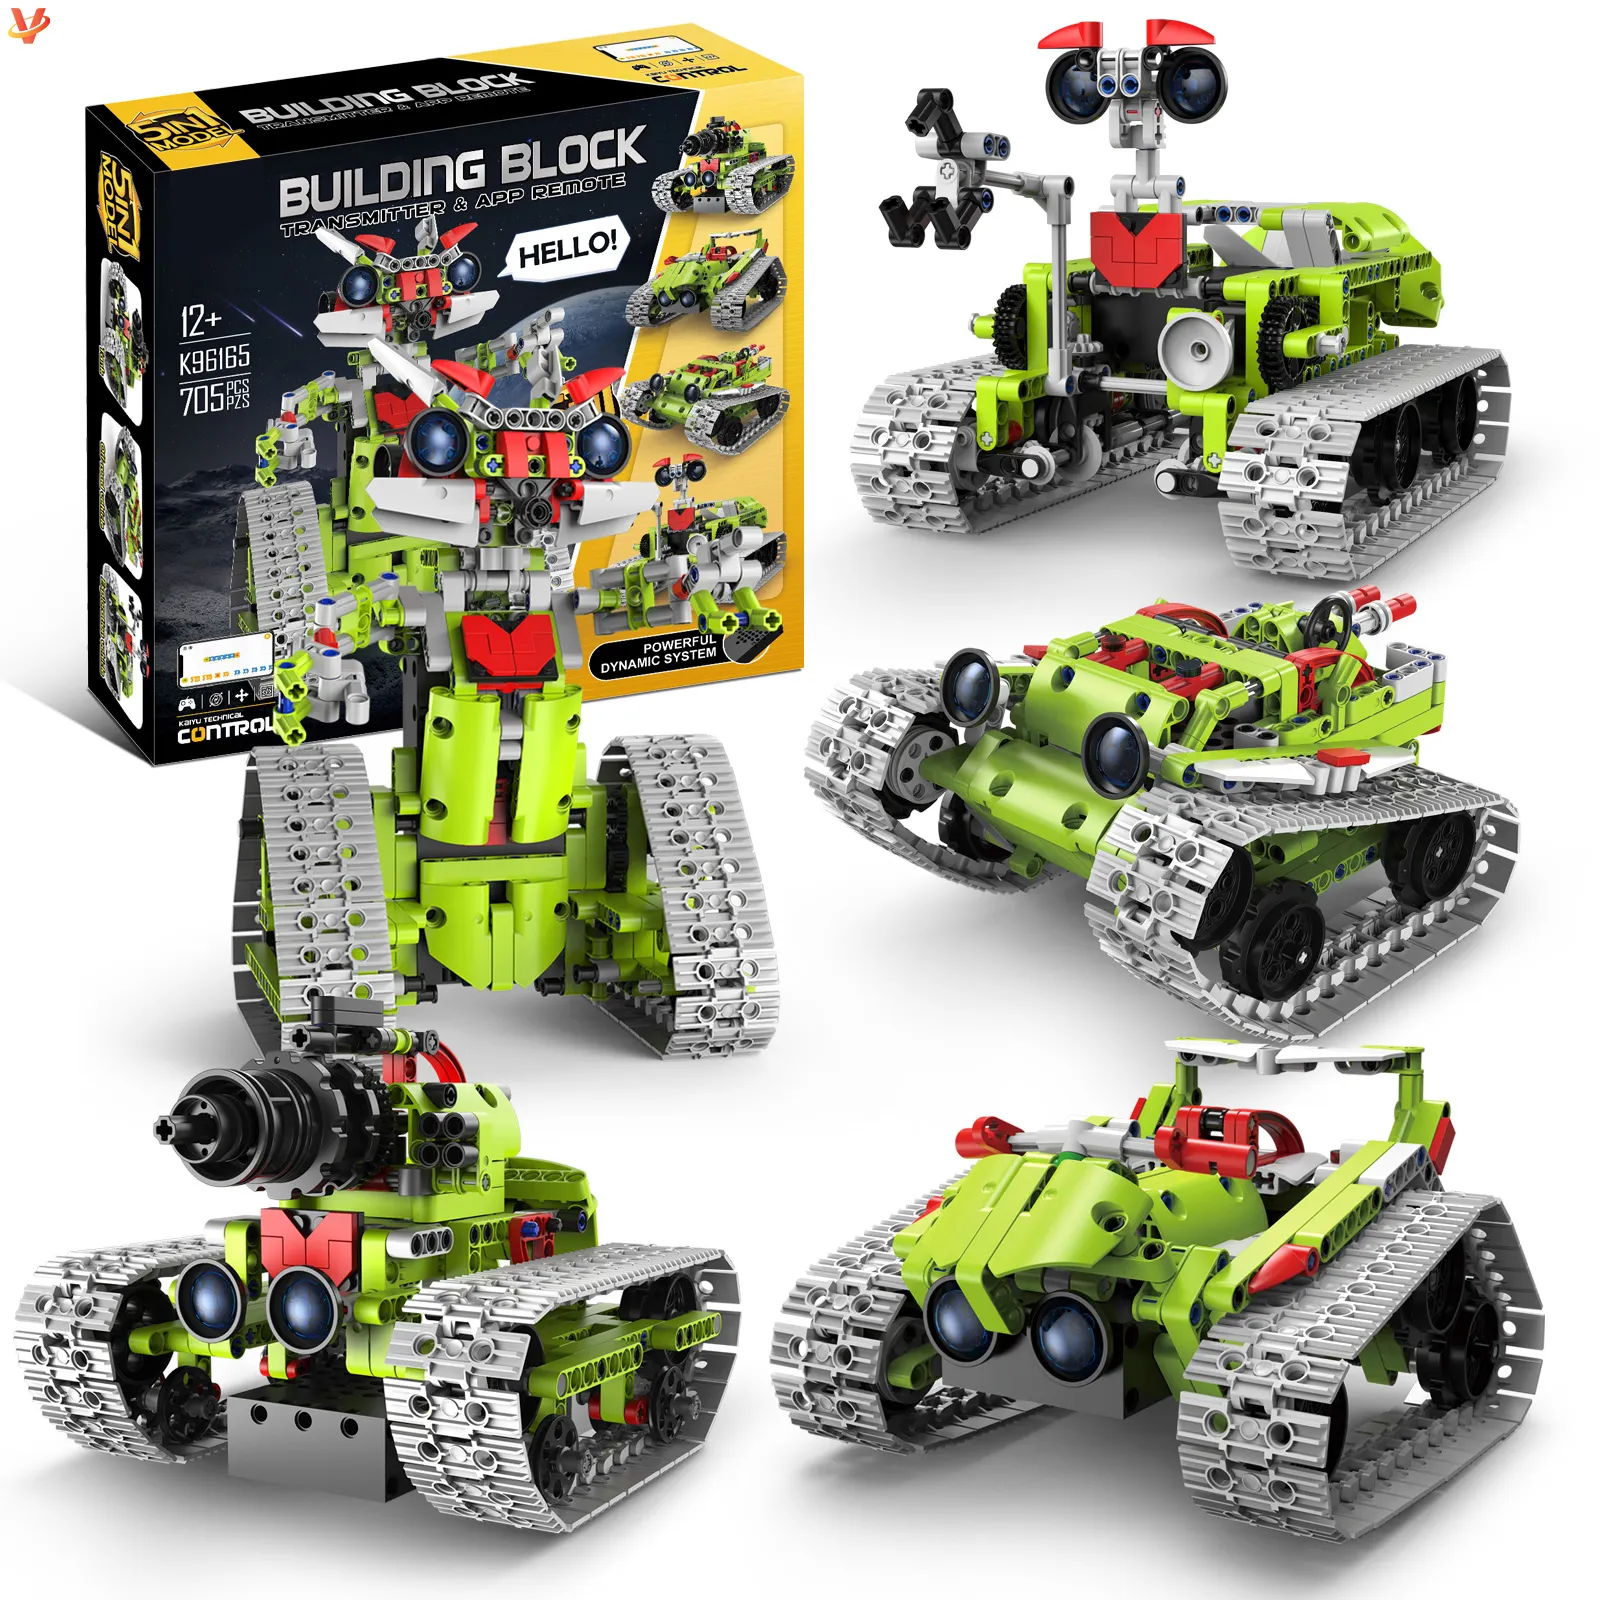 5 em 1 RC Robô Rastreado veículo tanque montar blocos de construção 2.4G APP controlado brinquedo educacional kit de aprendizagem ciência